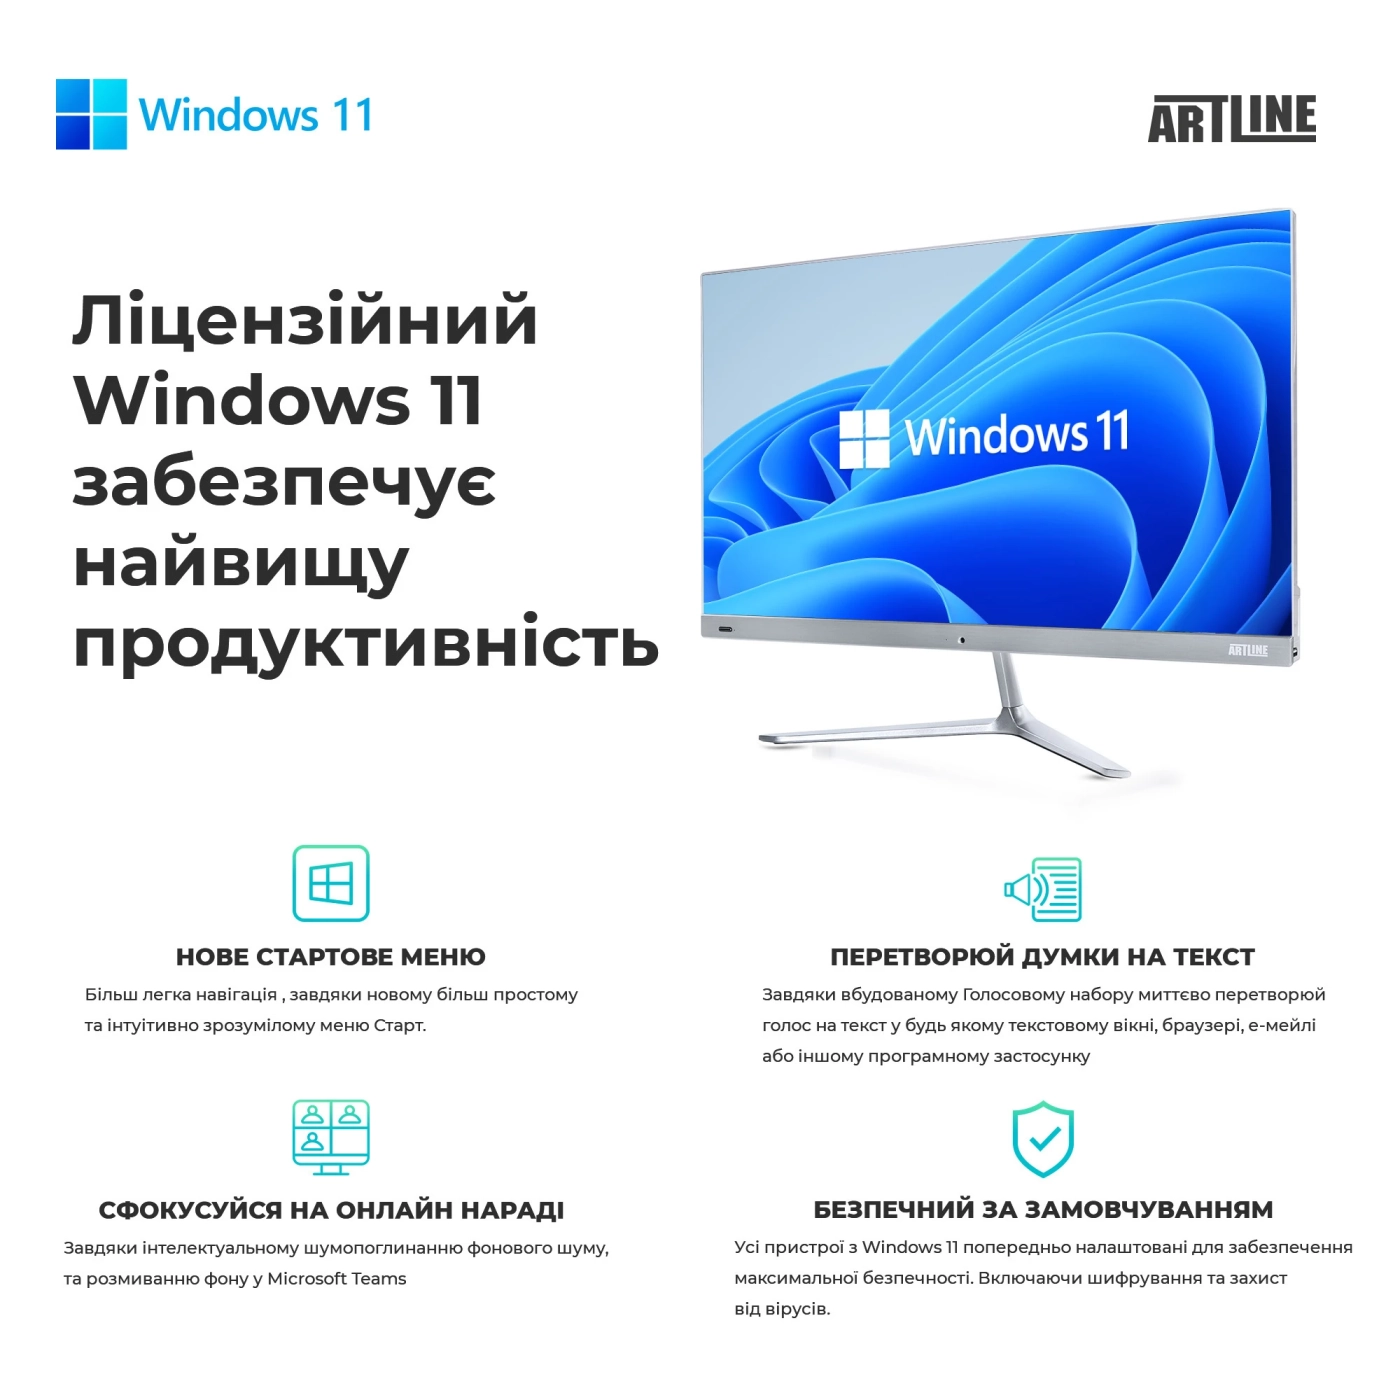 Купить Рабочая станция ARTLINE WorkStation W99 Windows 11 Pro (W99v68Win) - фото 11